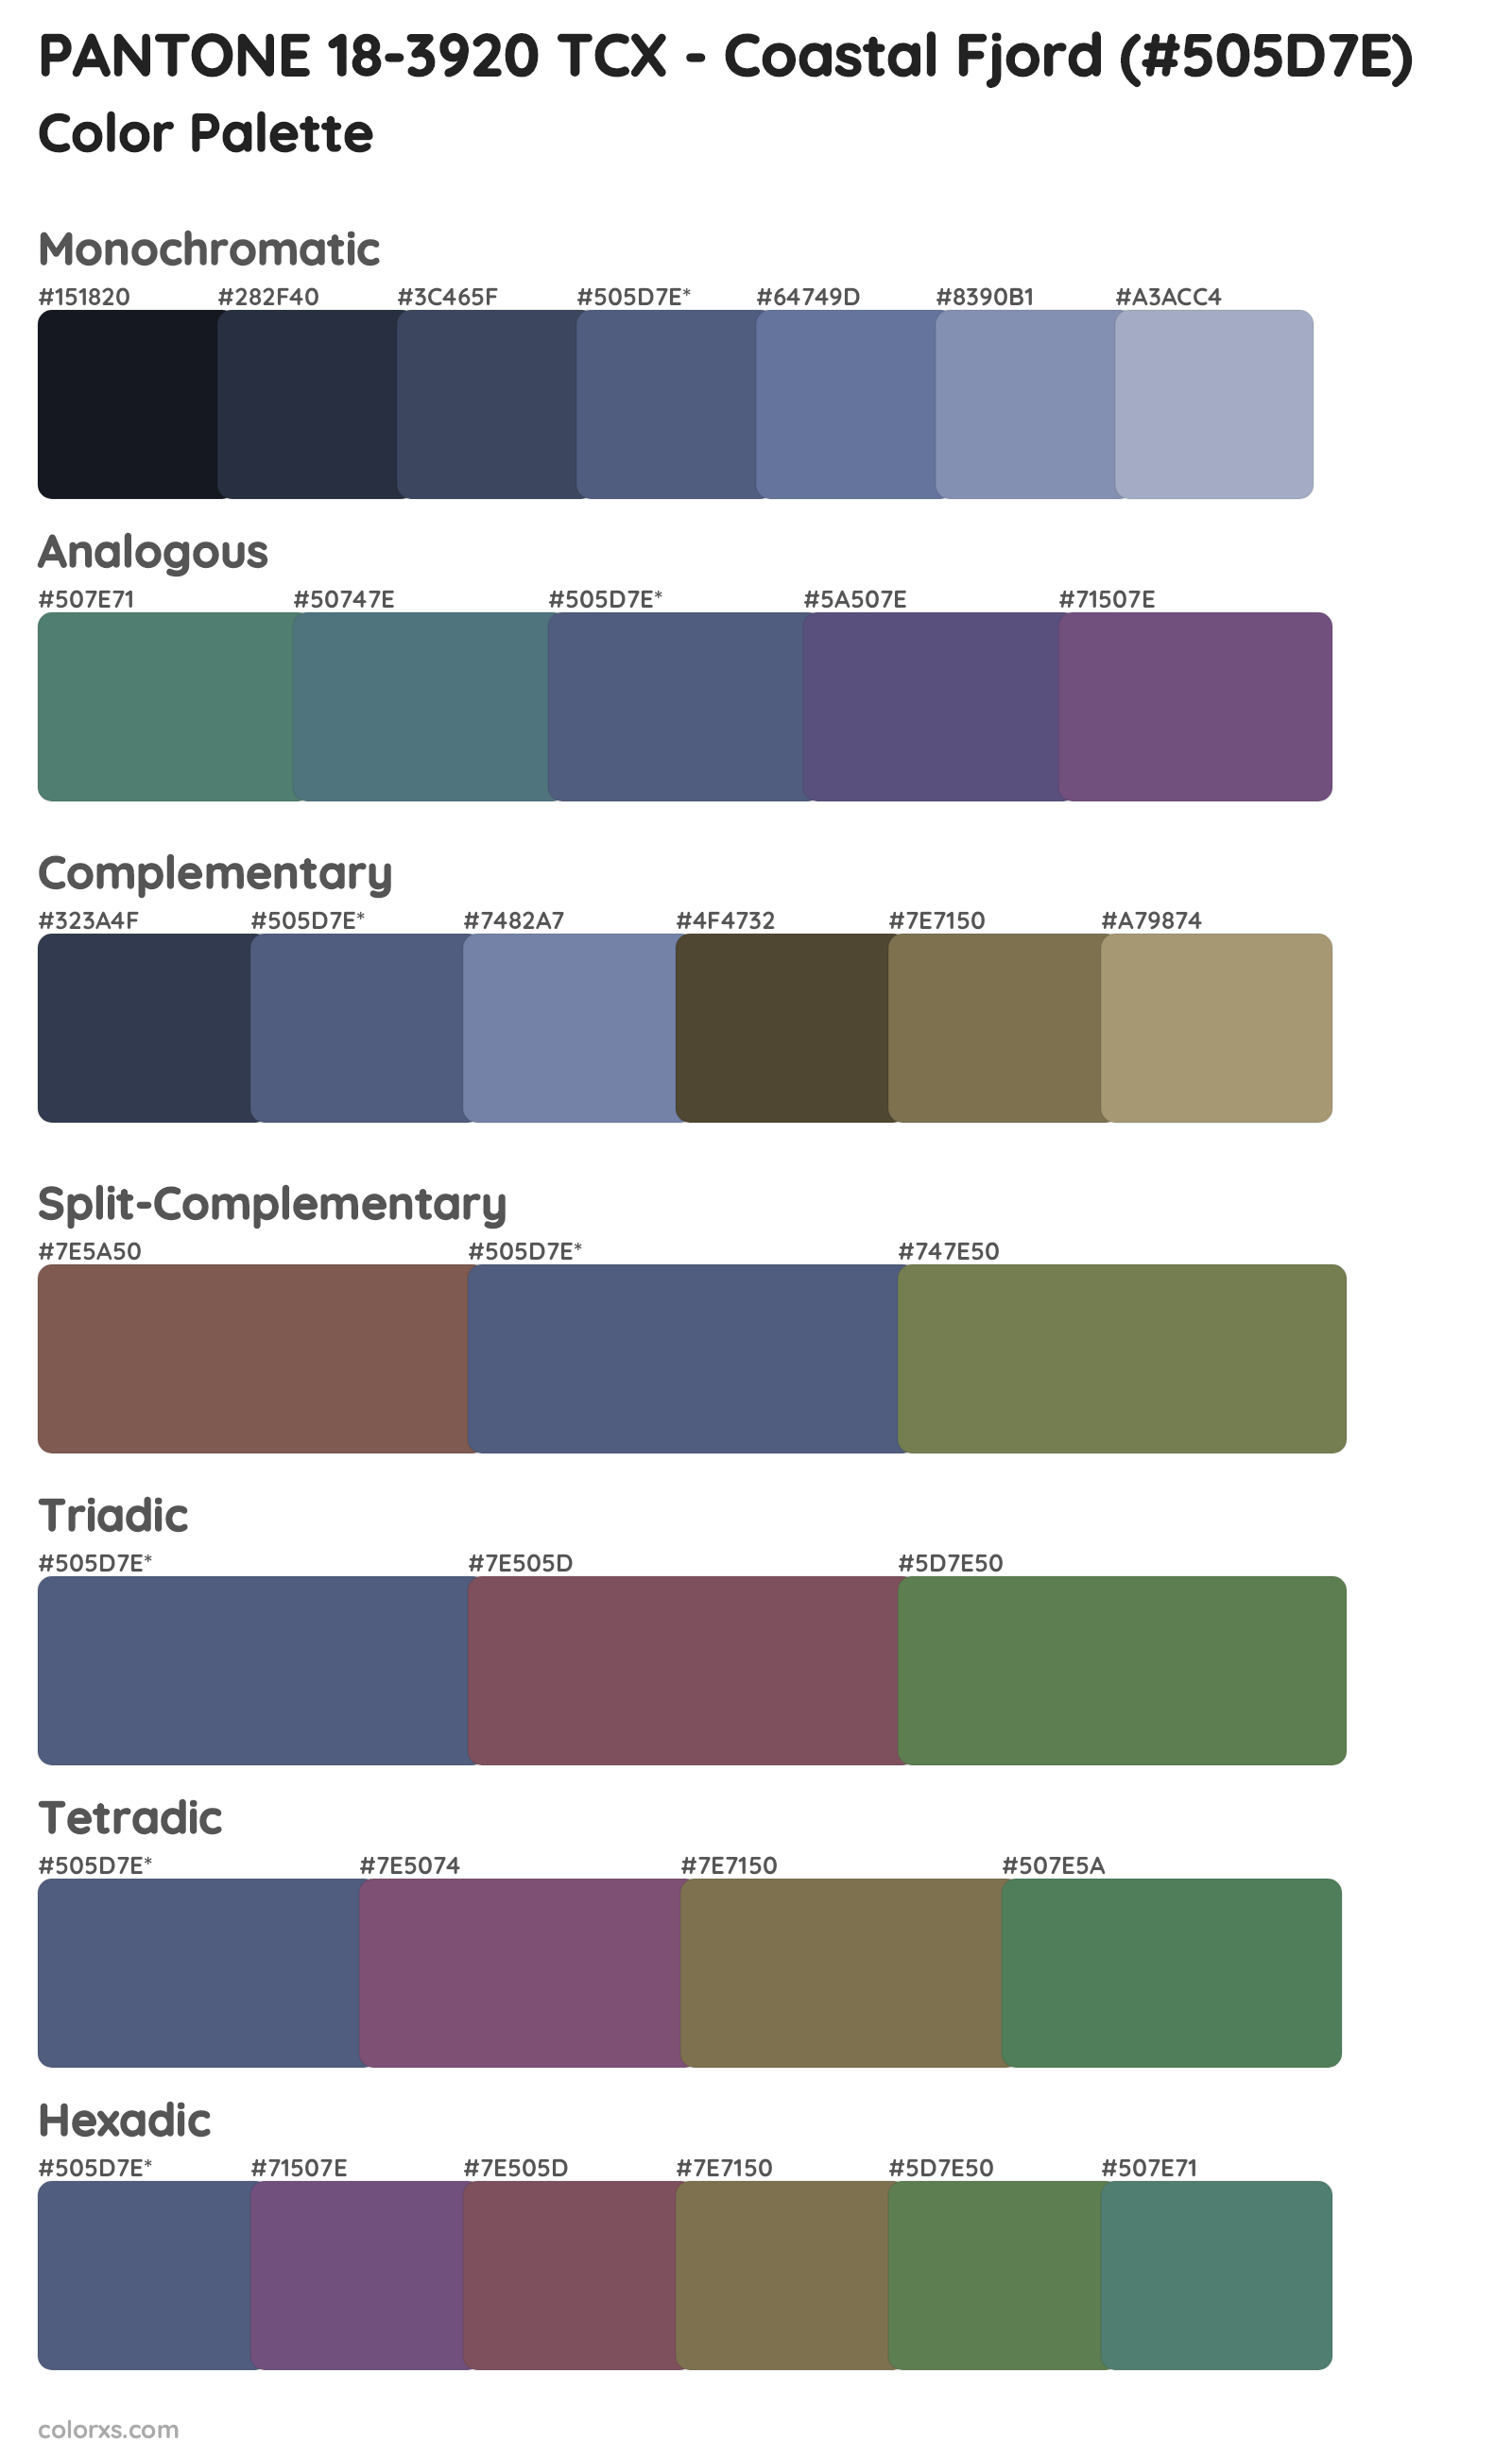 PANTONE 18-3920 TCX - Coastal Fjord Color Scheme Palettes